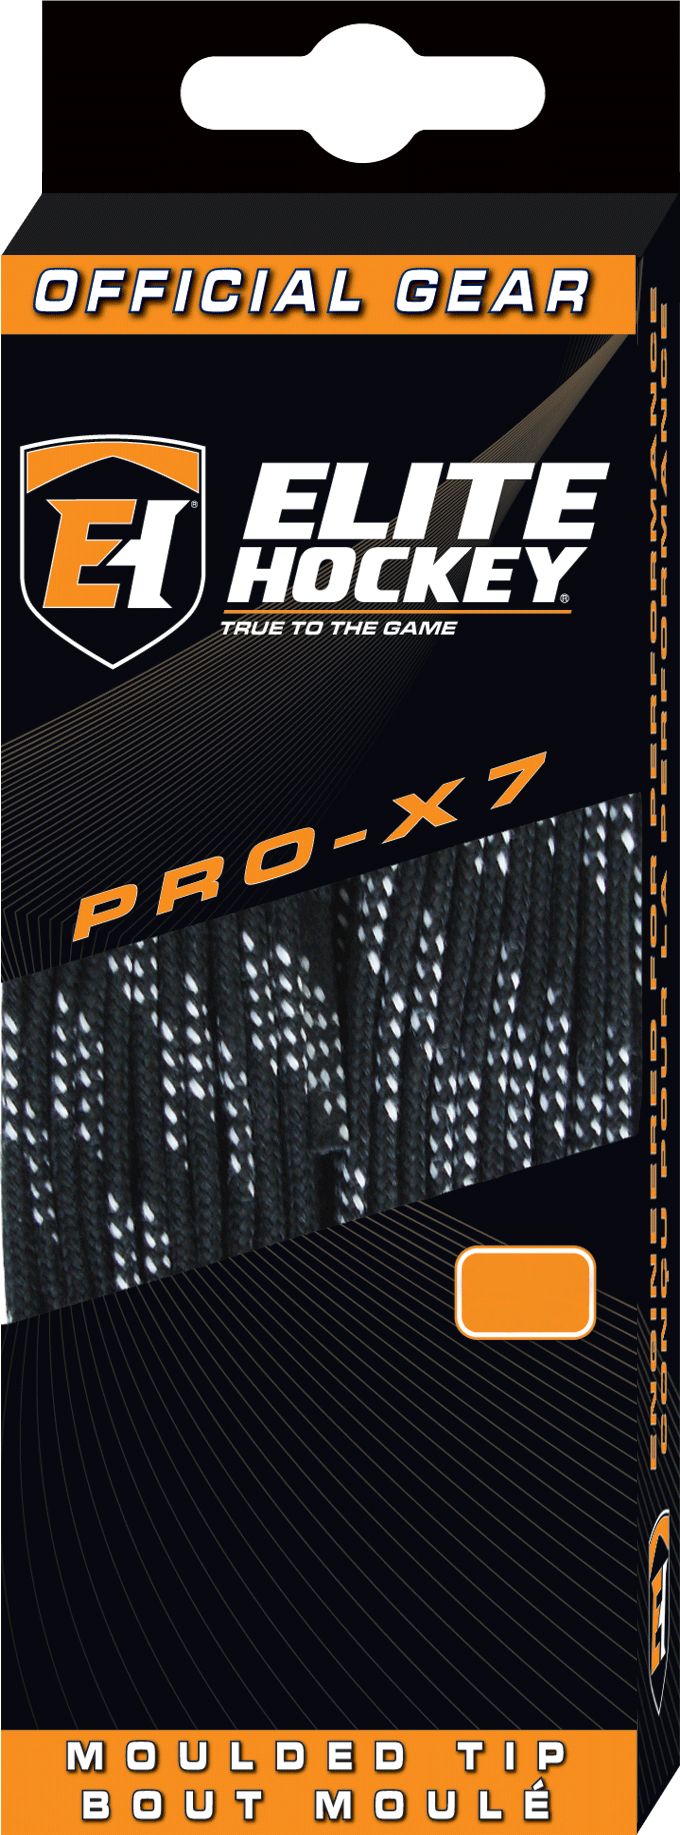 Elite Hockey Pro-X7 Unwaxed Skate Laces